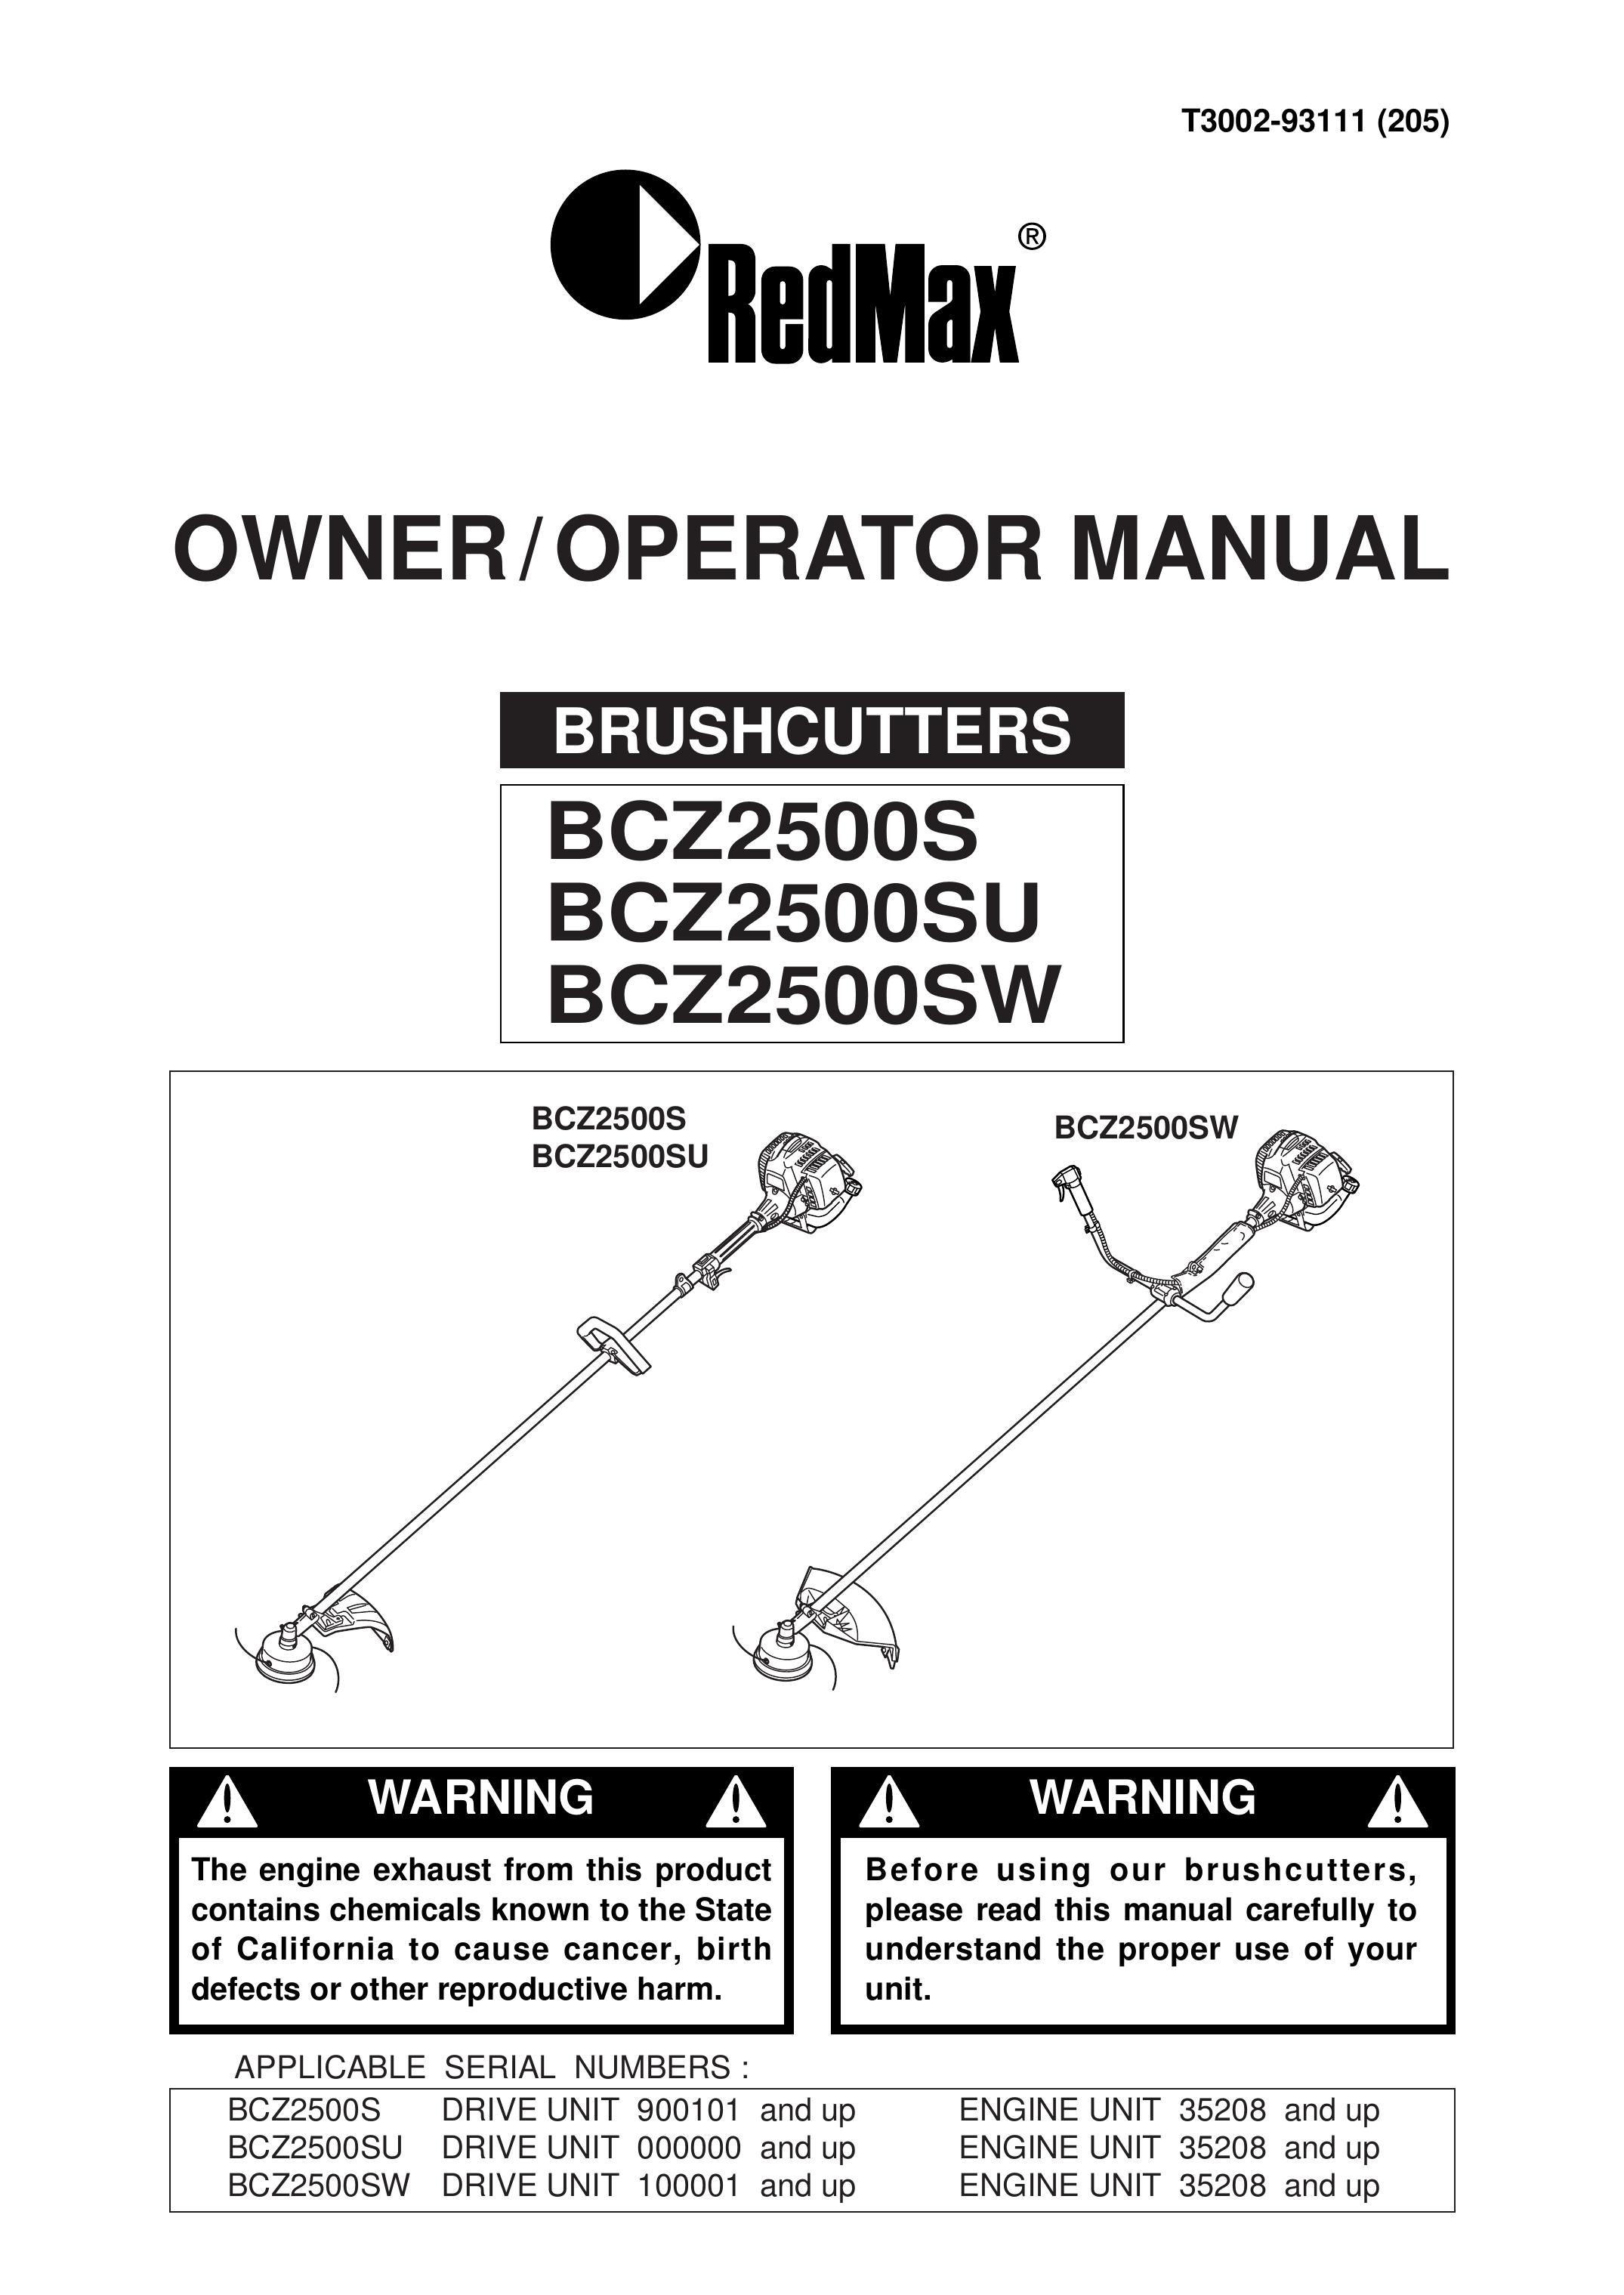 RedMax BCZ2500SW Brush Cutter User Manual